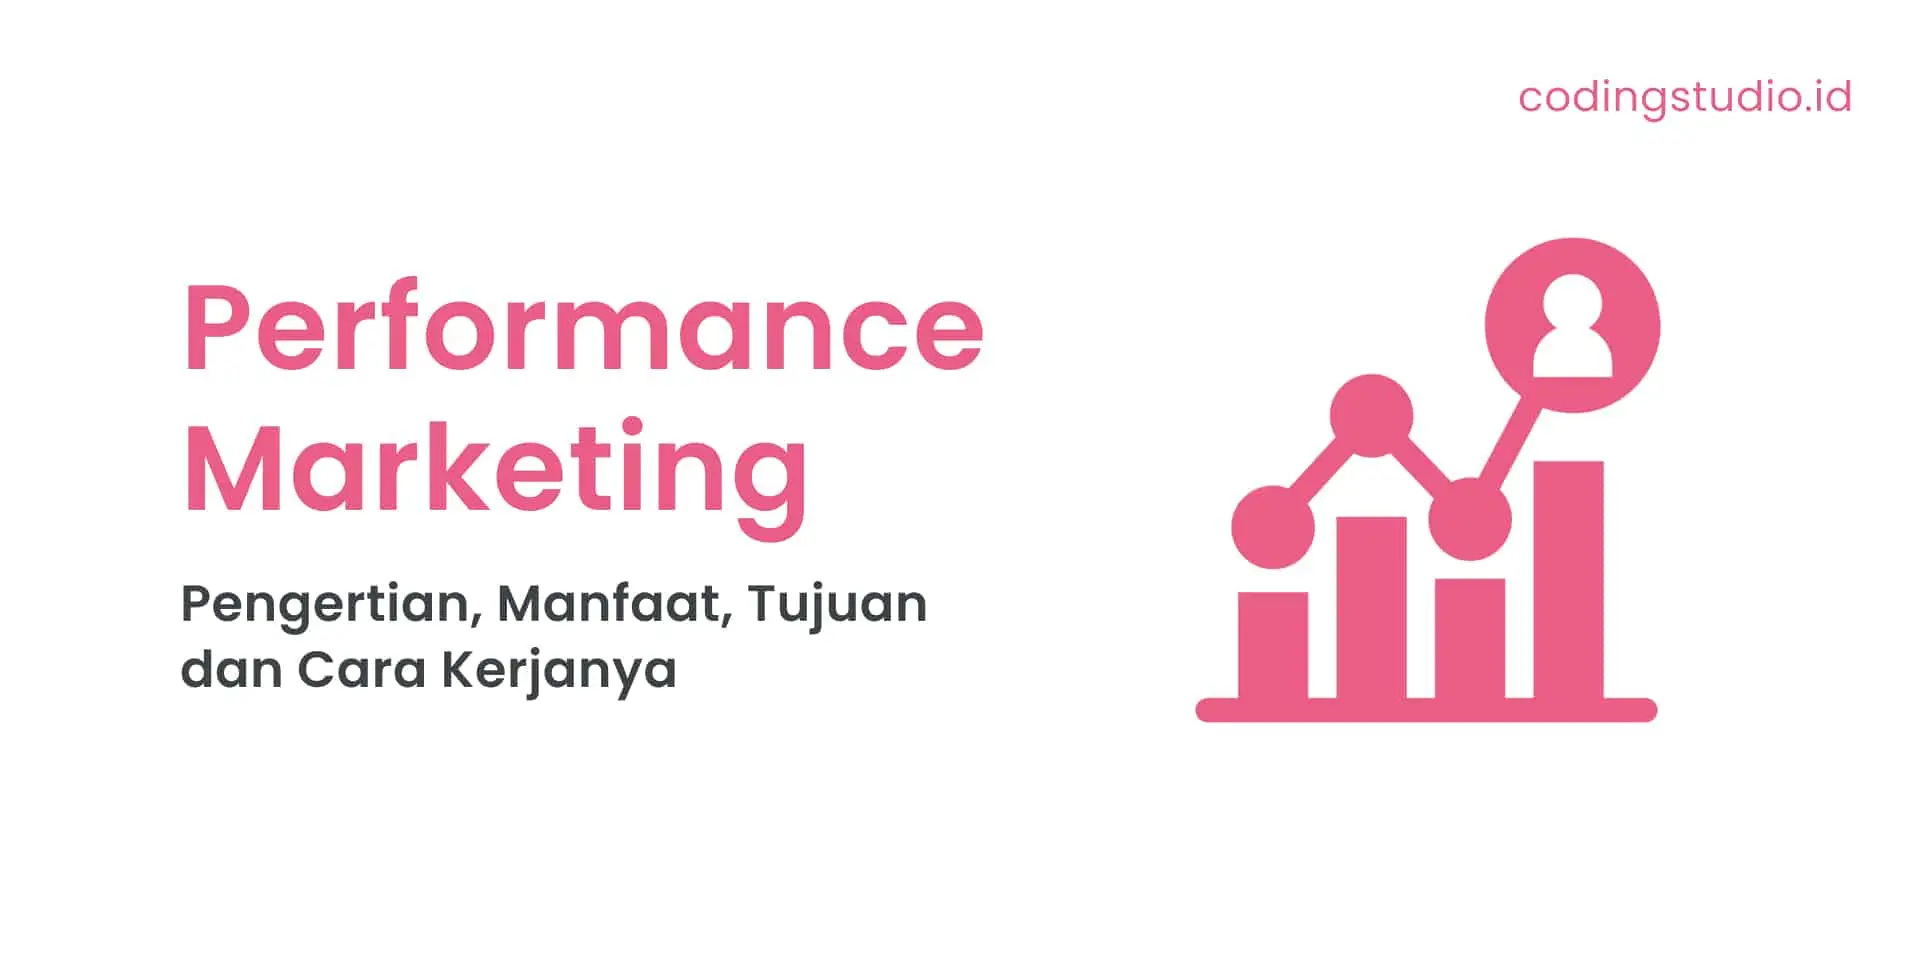 Apa Itu Performance Marketing Pengertian, Manfaat, Tujuan dan Cara Kerjanya